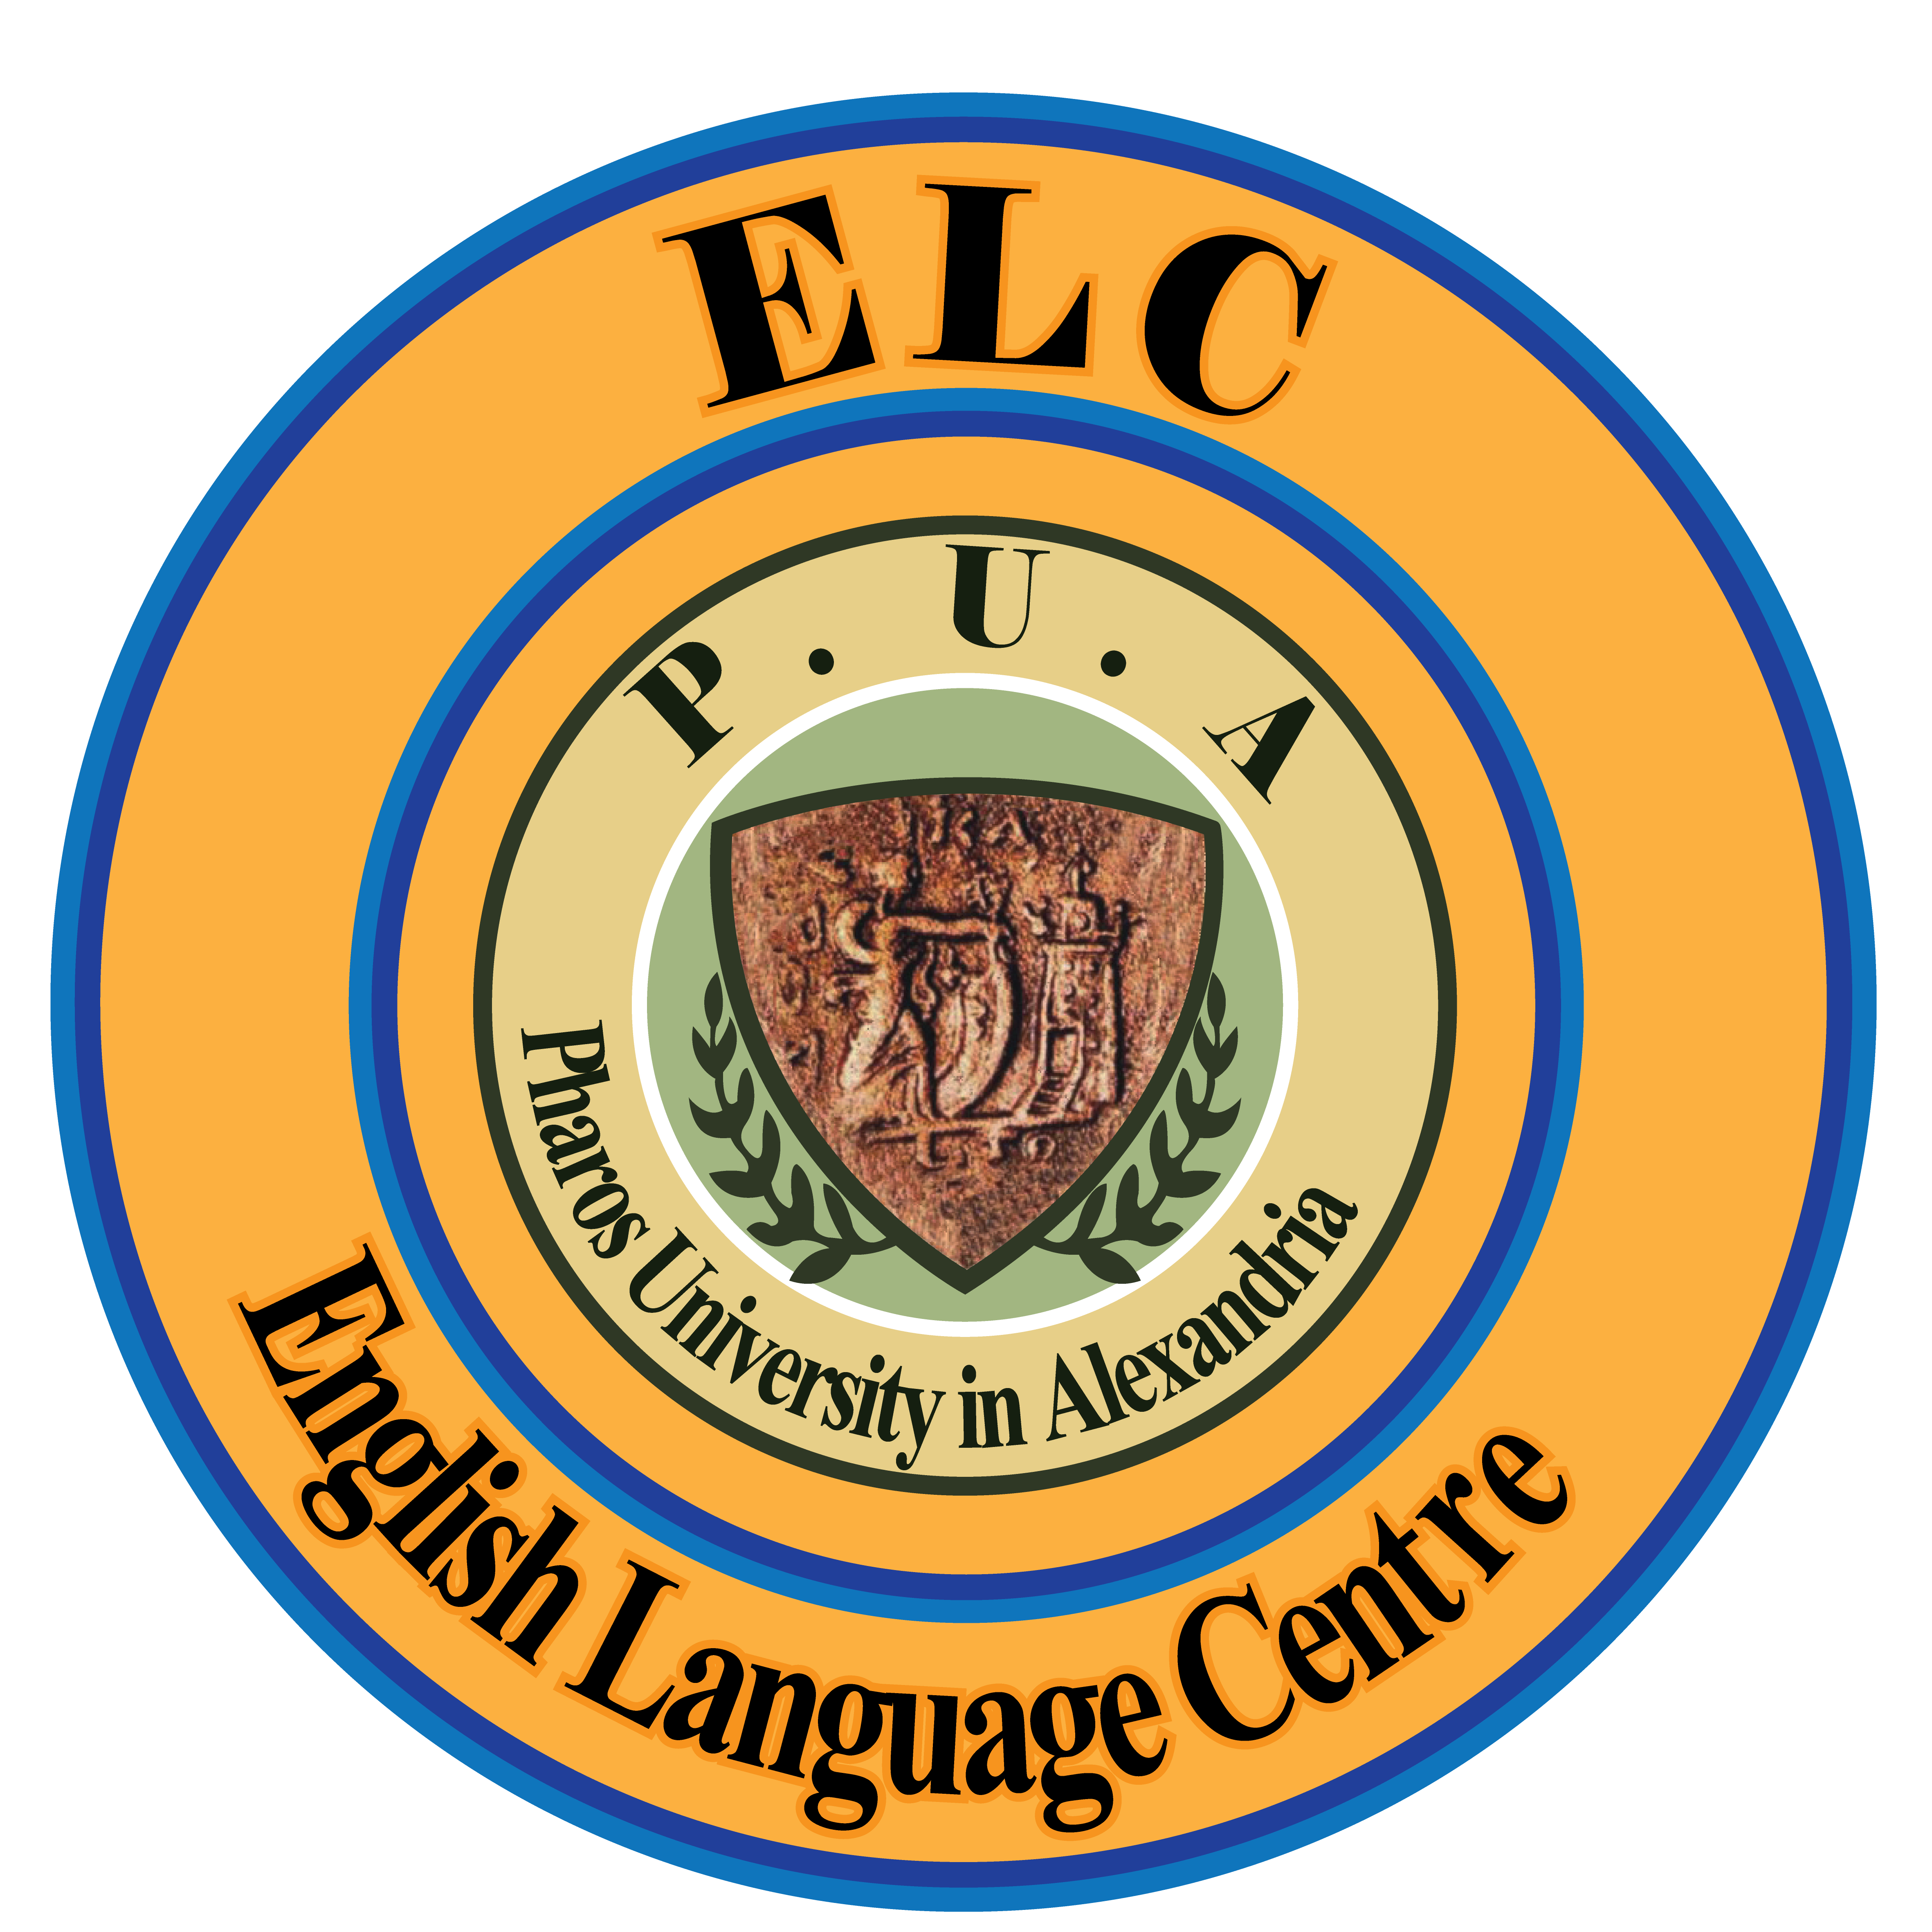 About ELC English Language Centre 